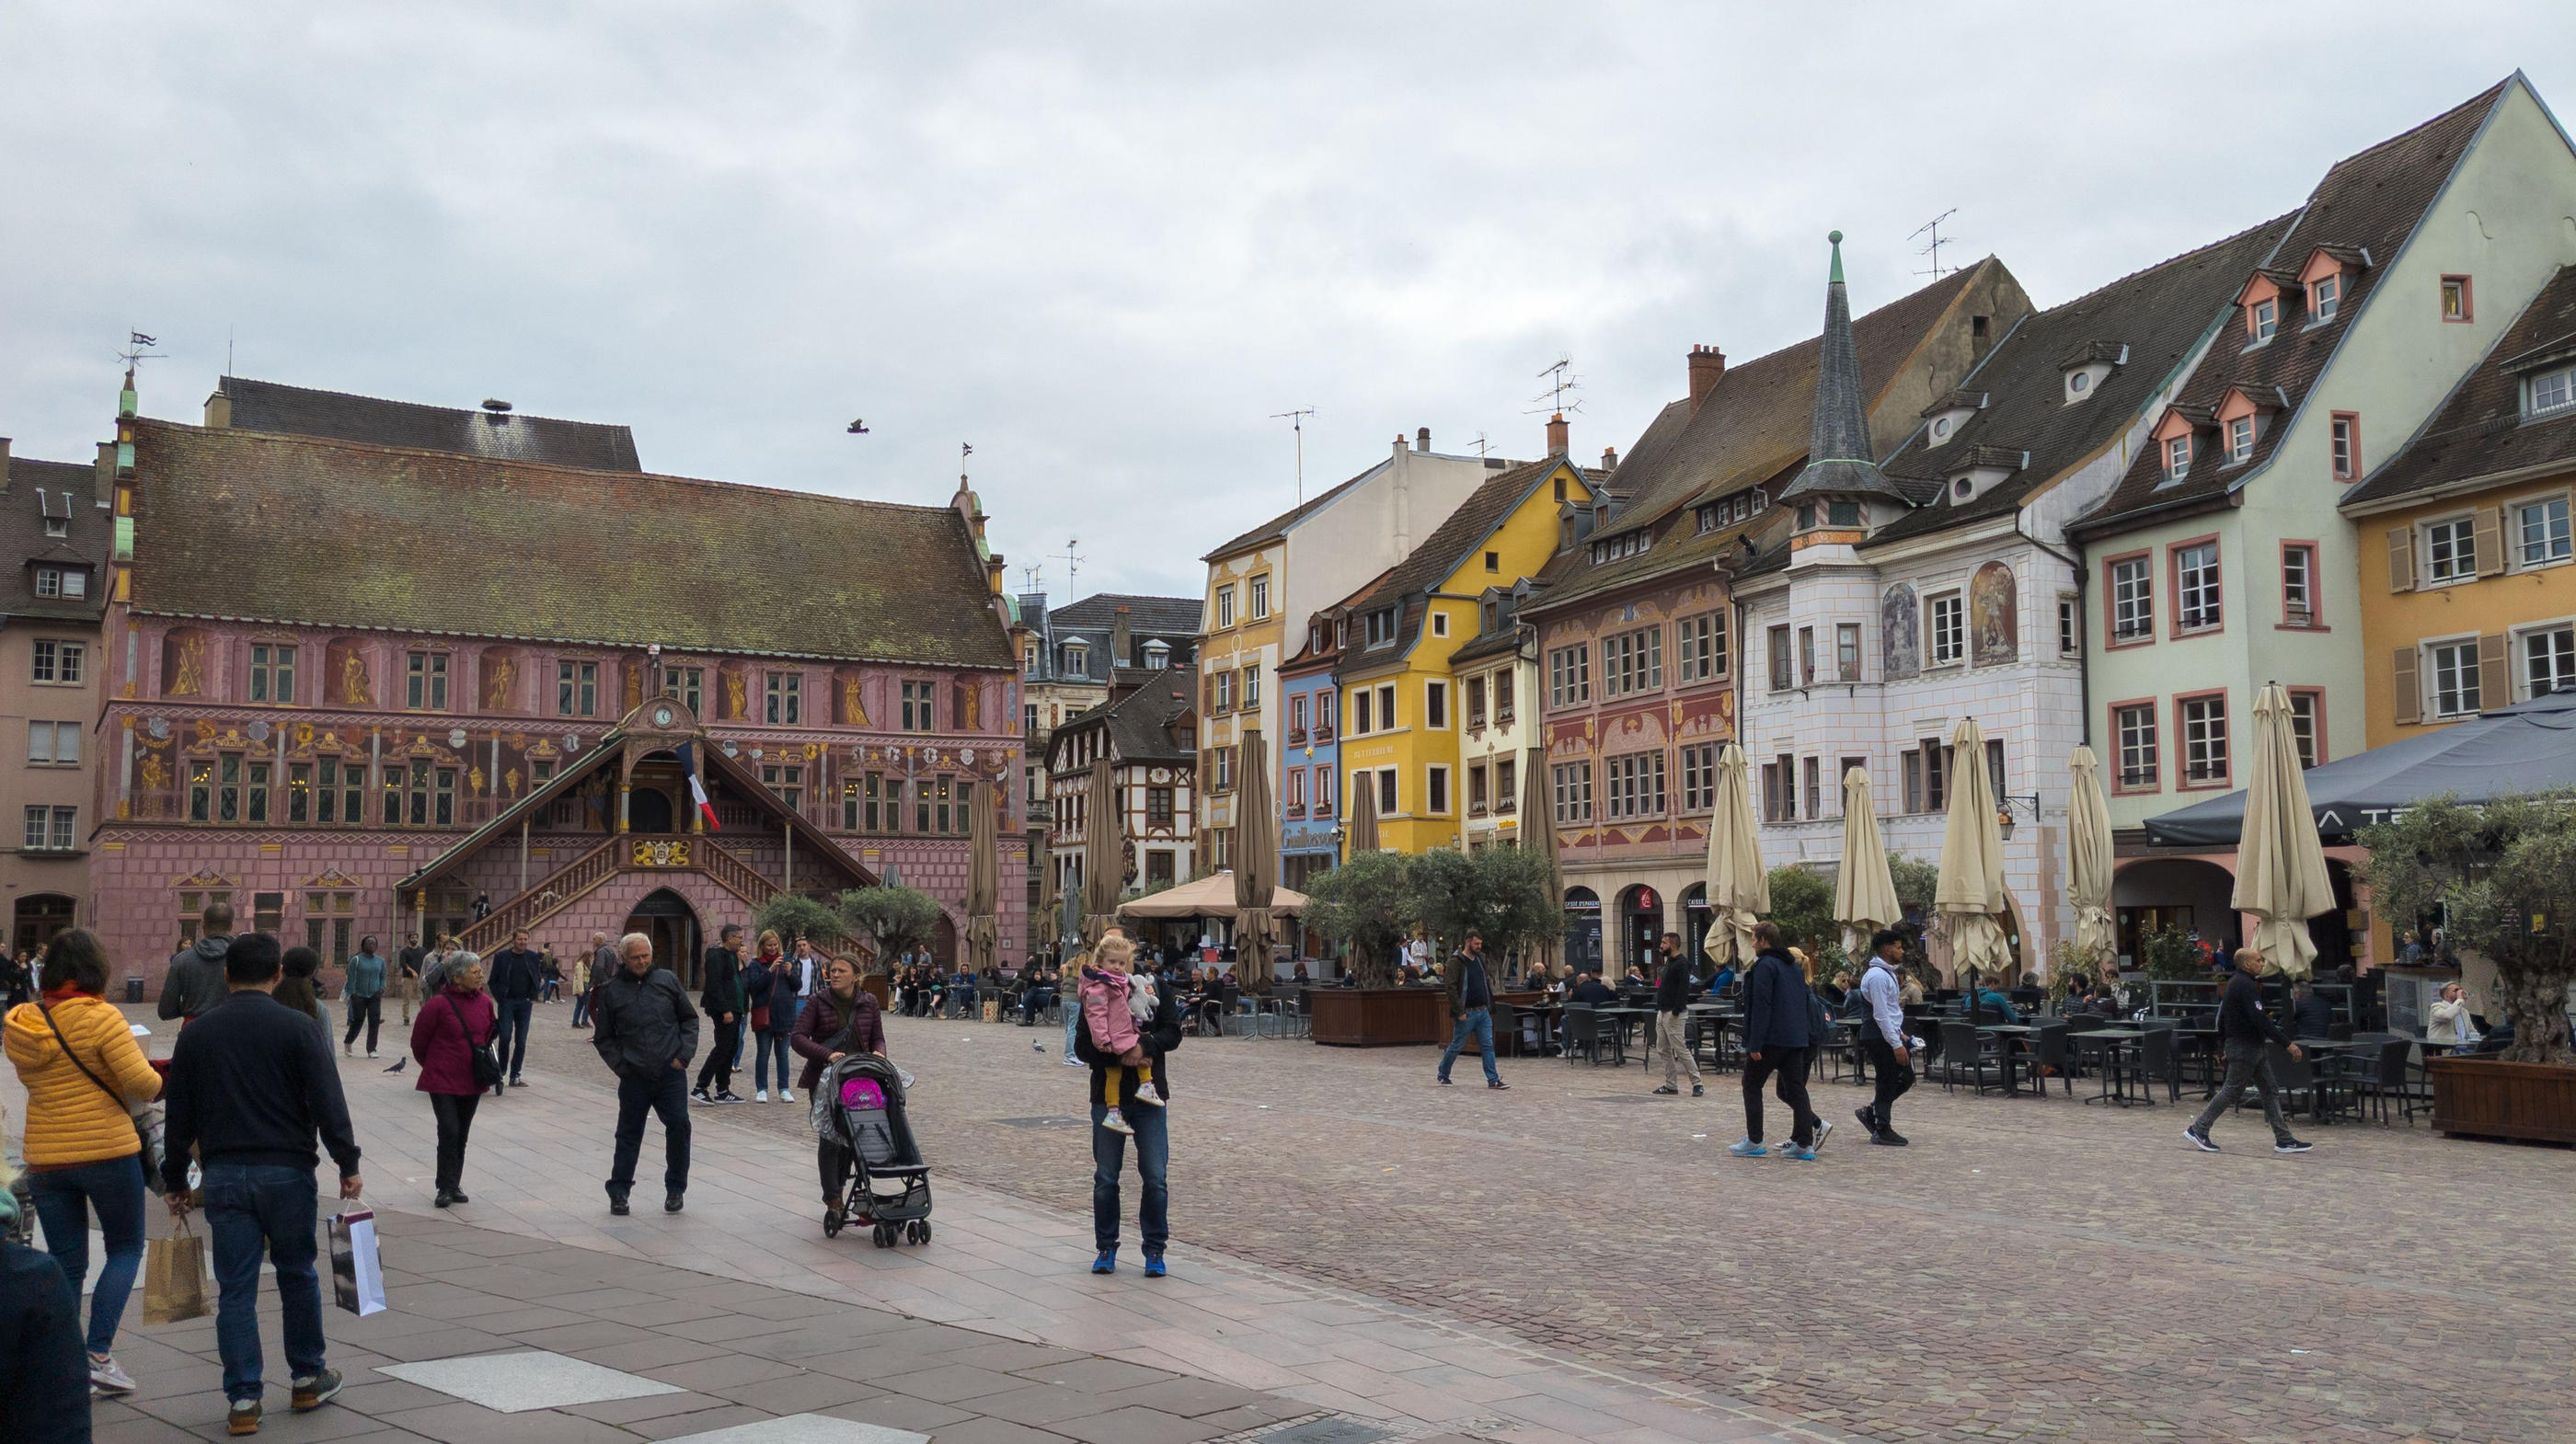 Ancienne ville industrielle, Mulhouse (Haut-Rhin), a su redorer son image. Aujourd'hui, son marché de l'emploi dynamique et ses tarifs immobiliers attractifs en font un point de chute très prisé. ISTOCK